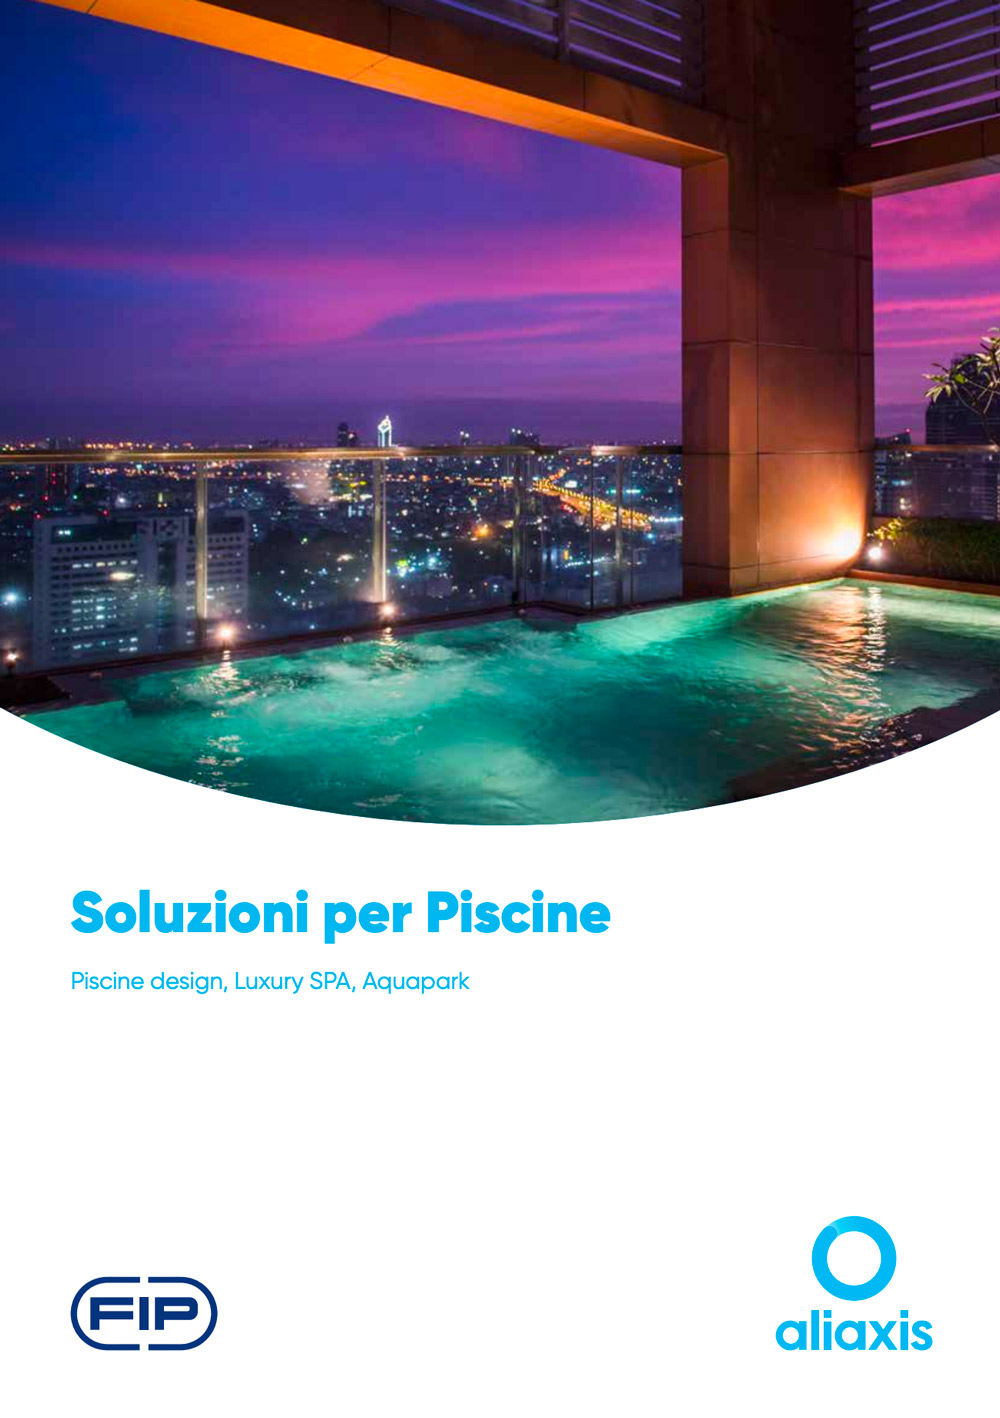 Soluzioni per Piscine design, Luxury SPA, Aquapark